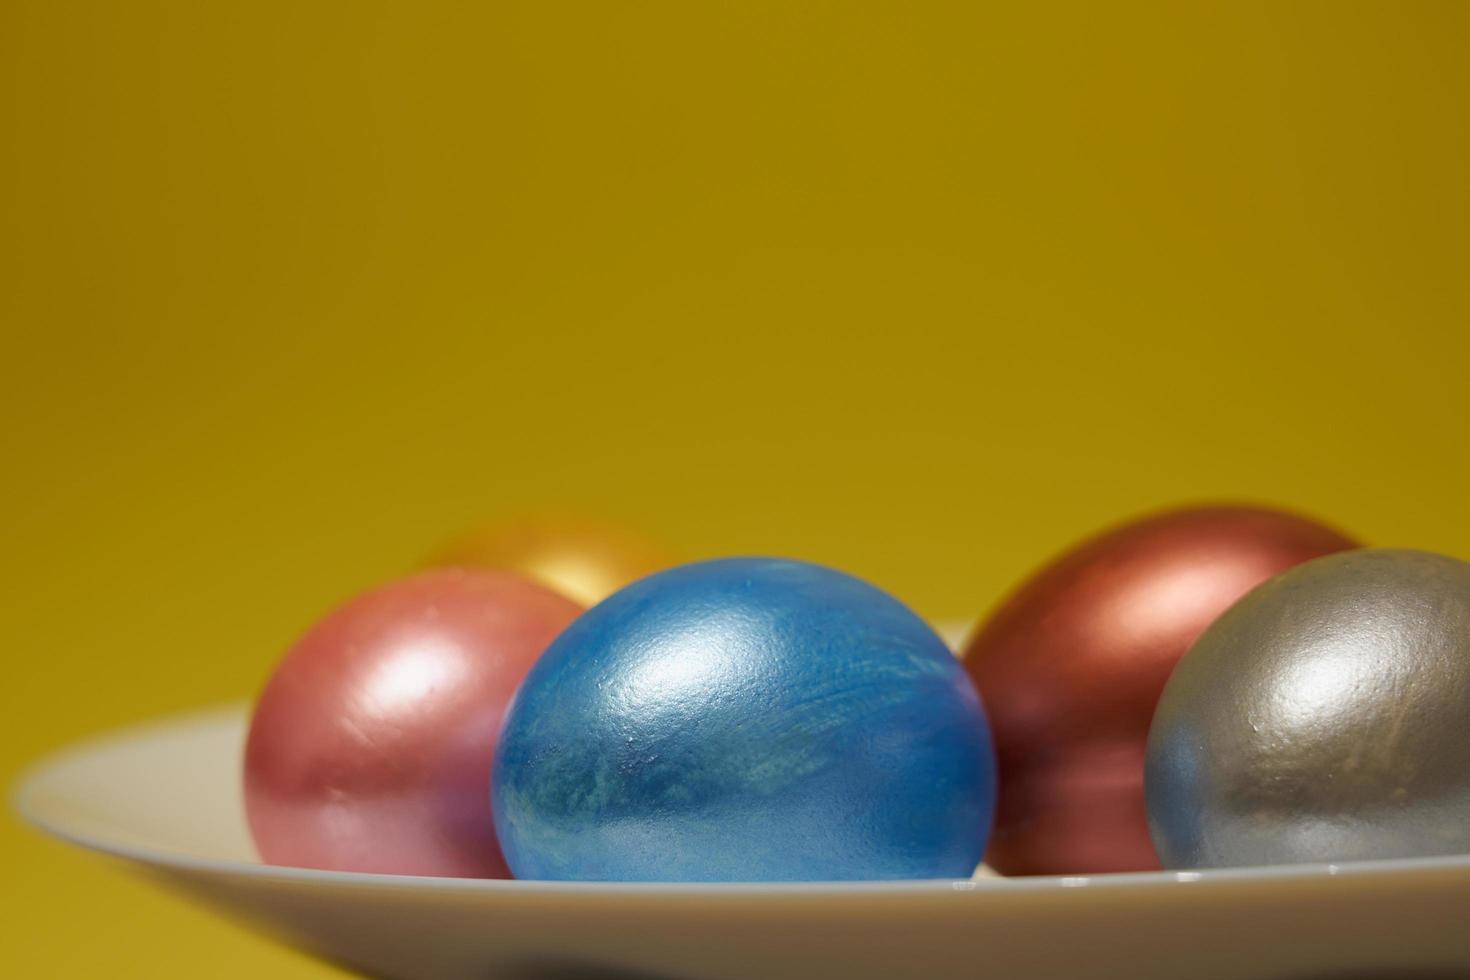 målade ägg på en vit platta med gul bakgrund för påsk foto